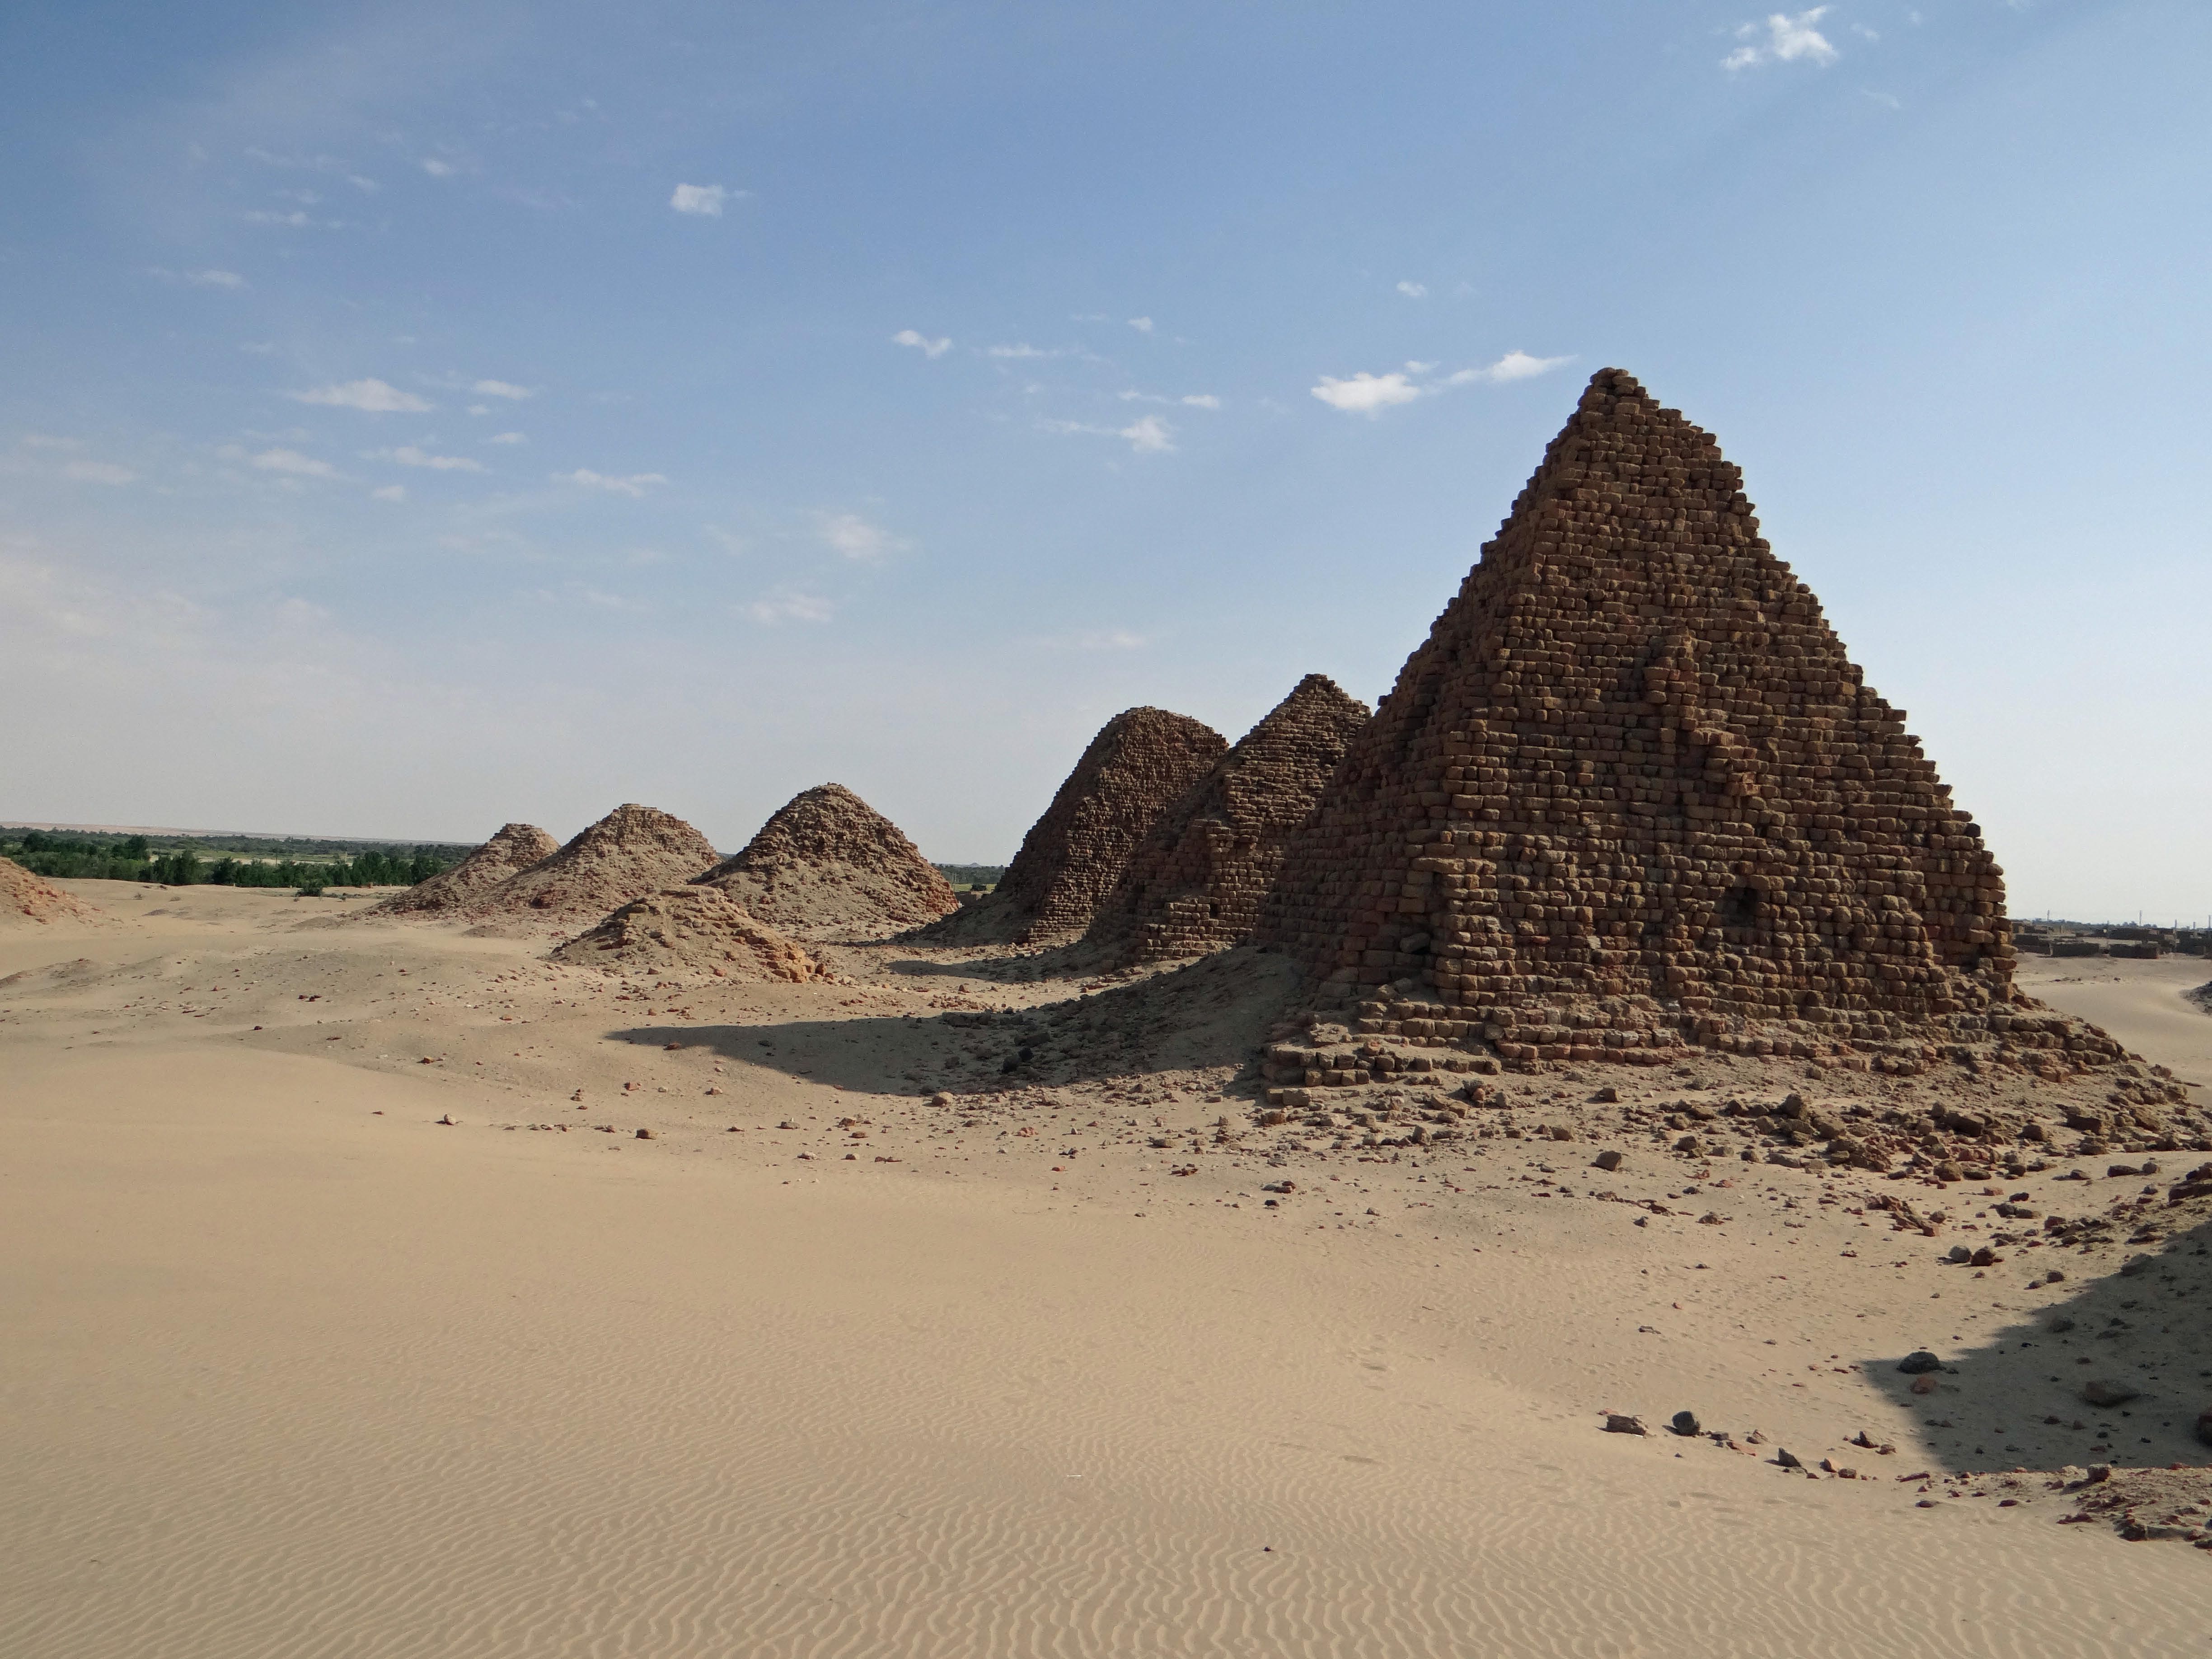 Pyramids at Nuri (Sudan has MORE pyramids than Egypt).